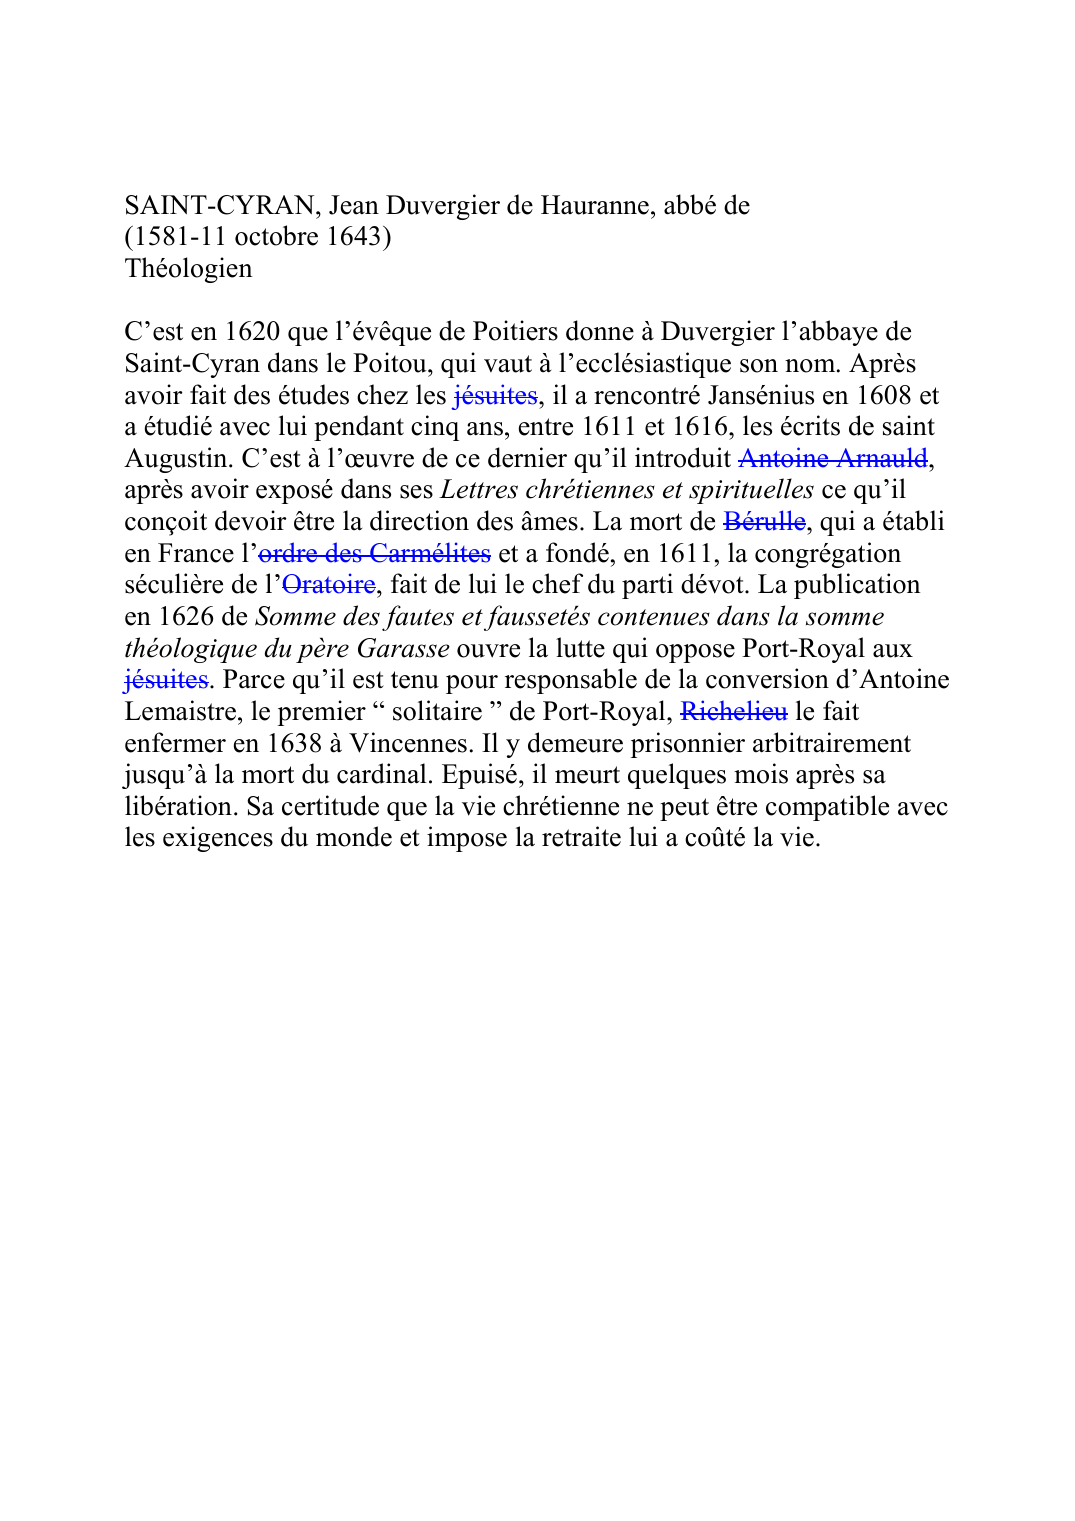 Prévisualisation du document SAINT-CYRAN, Jean Duvergier de Hauranne, abbé de(1581-11 octobre 1643)ThéologienC'est en 1620 que l'évêque de Poitiers donne à Duvergier l'abbaye deSaint-Cyran dans le Poitou, qui vaut à l'ecclésiastique son nom.